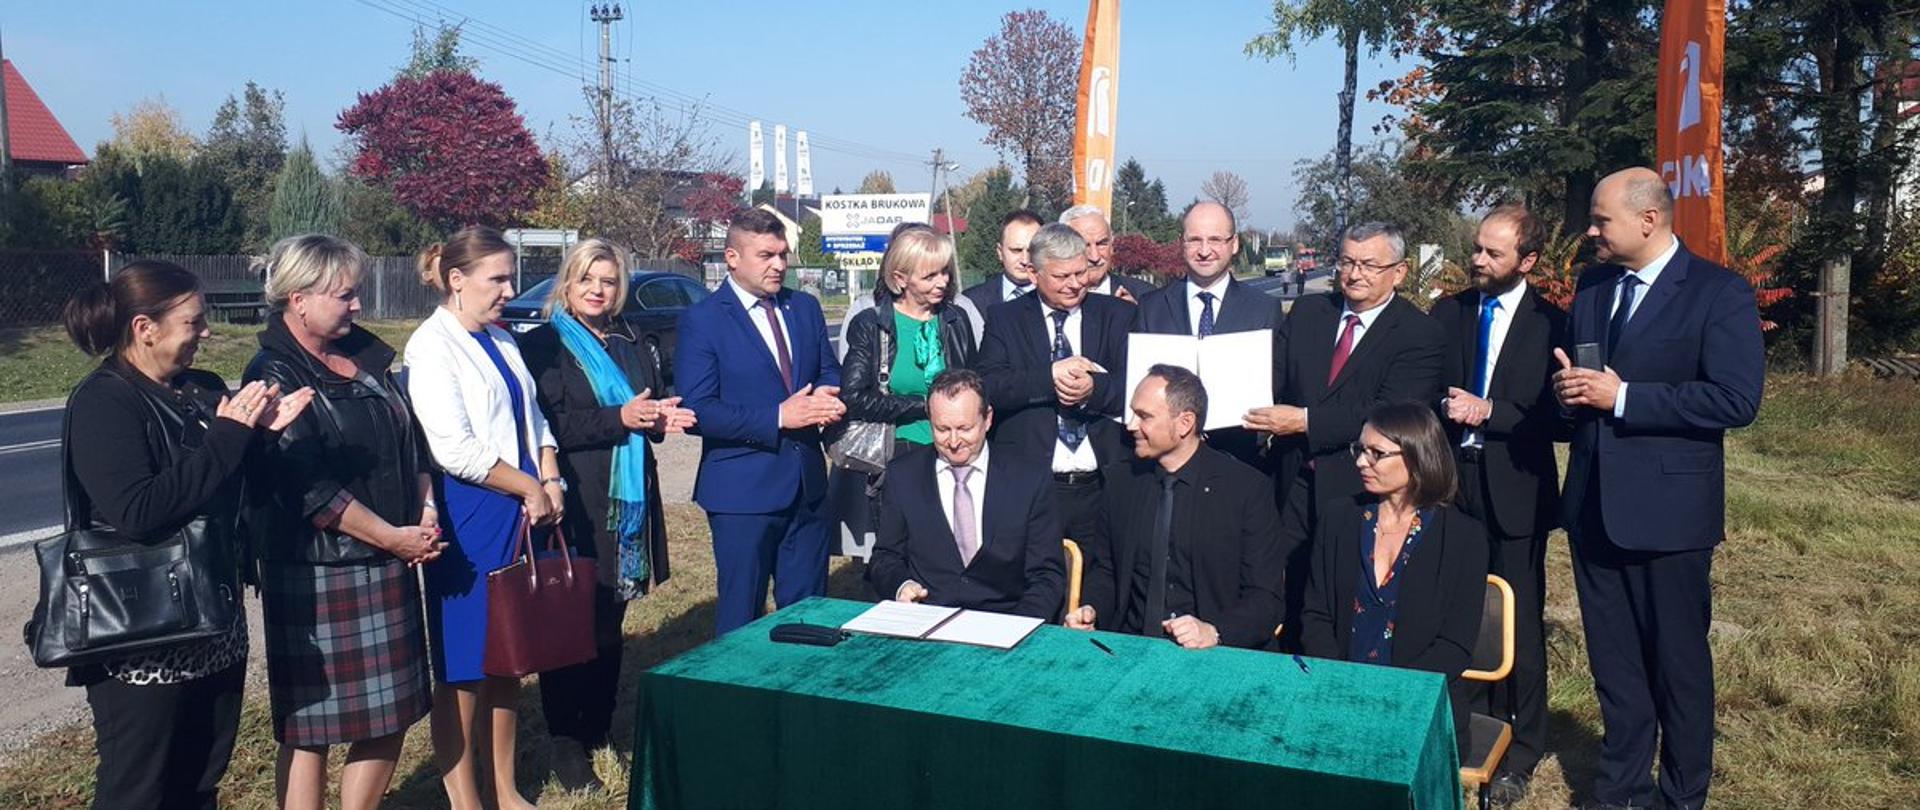 Podpisanie umowy na obwodnicę Iłży przy udziale ministra infrastruktury Andrzeja Adamczyka